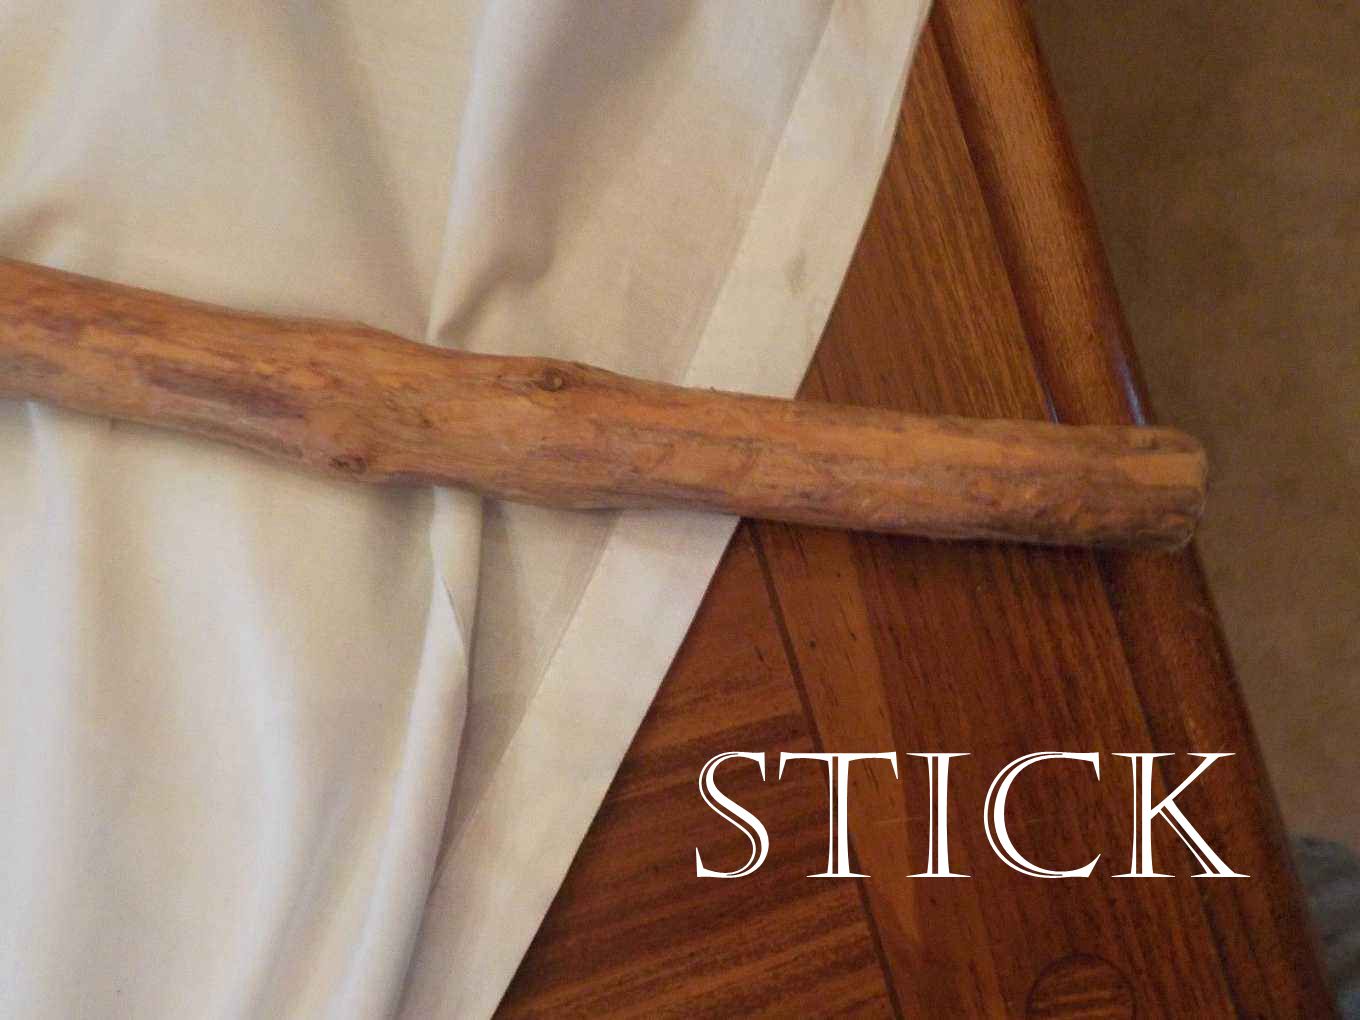 stick 的用法